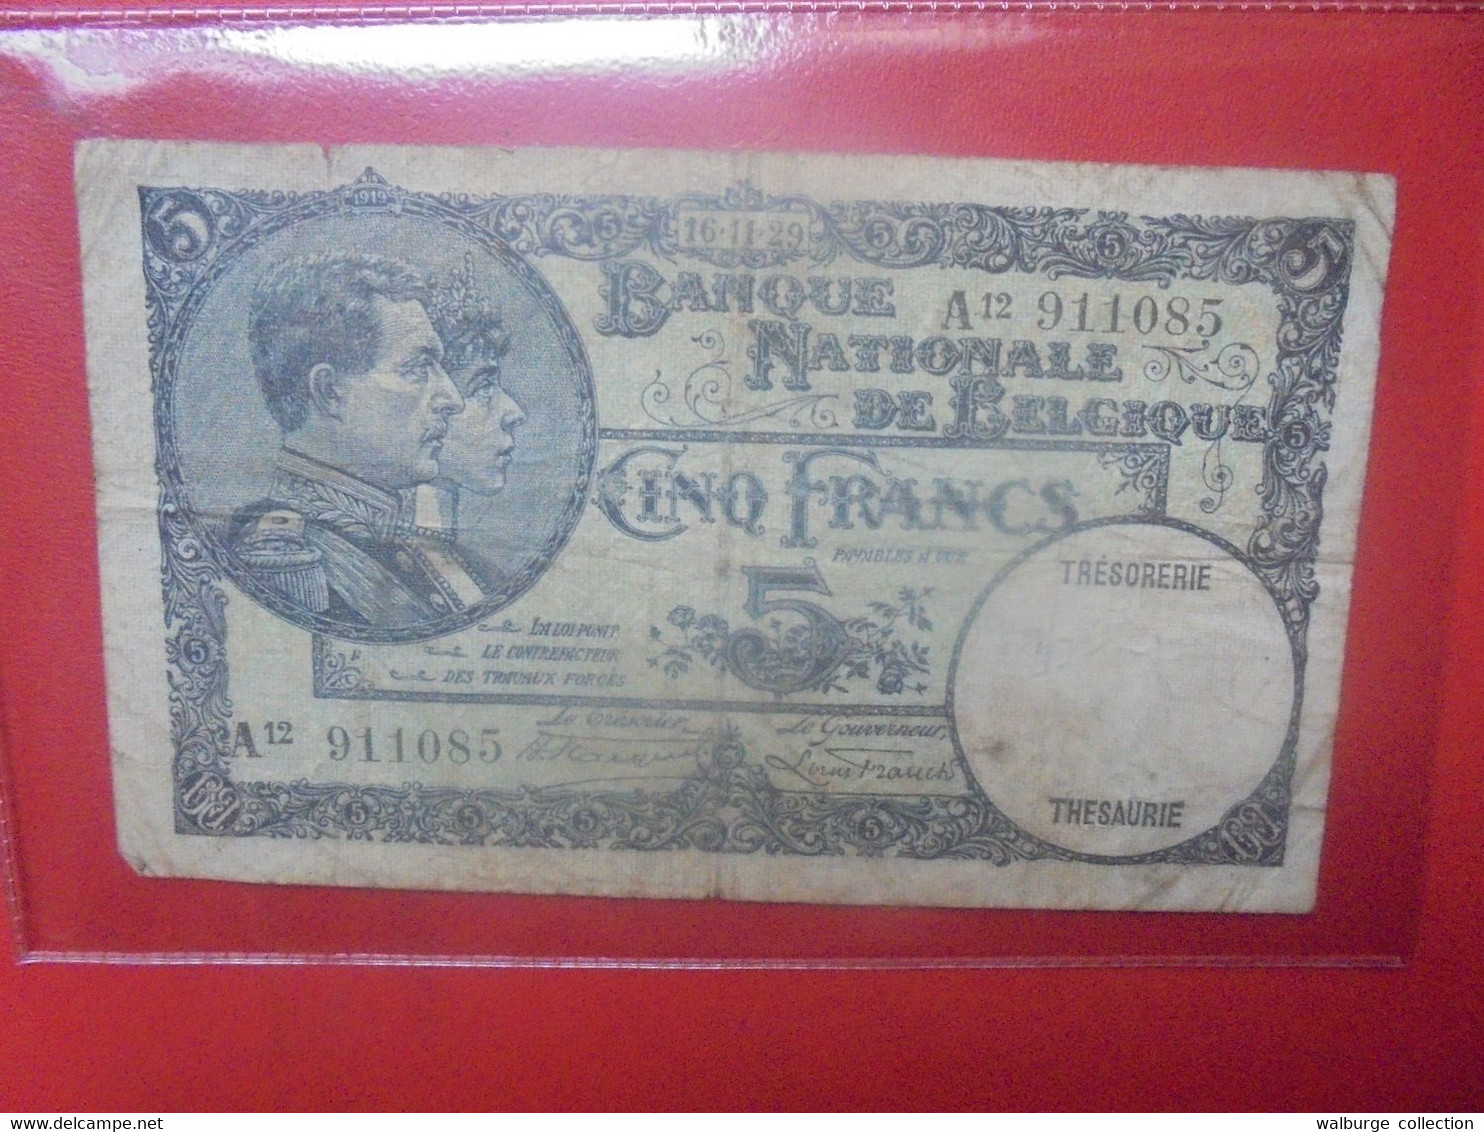 BELGIQUE 5 Francs 1929 Circuler (B.18) - 5 Francs